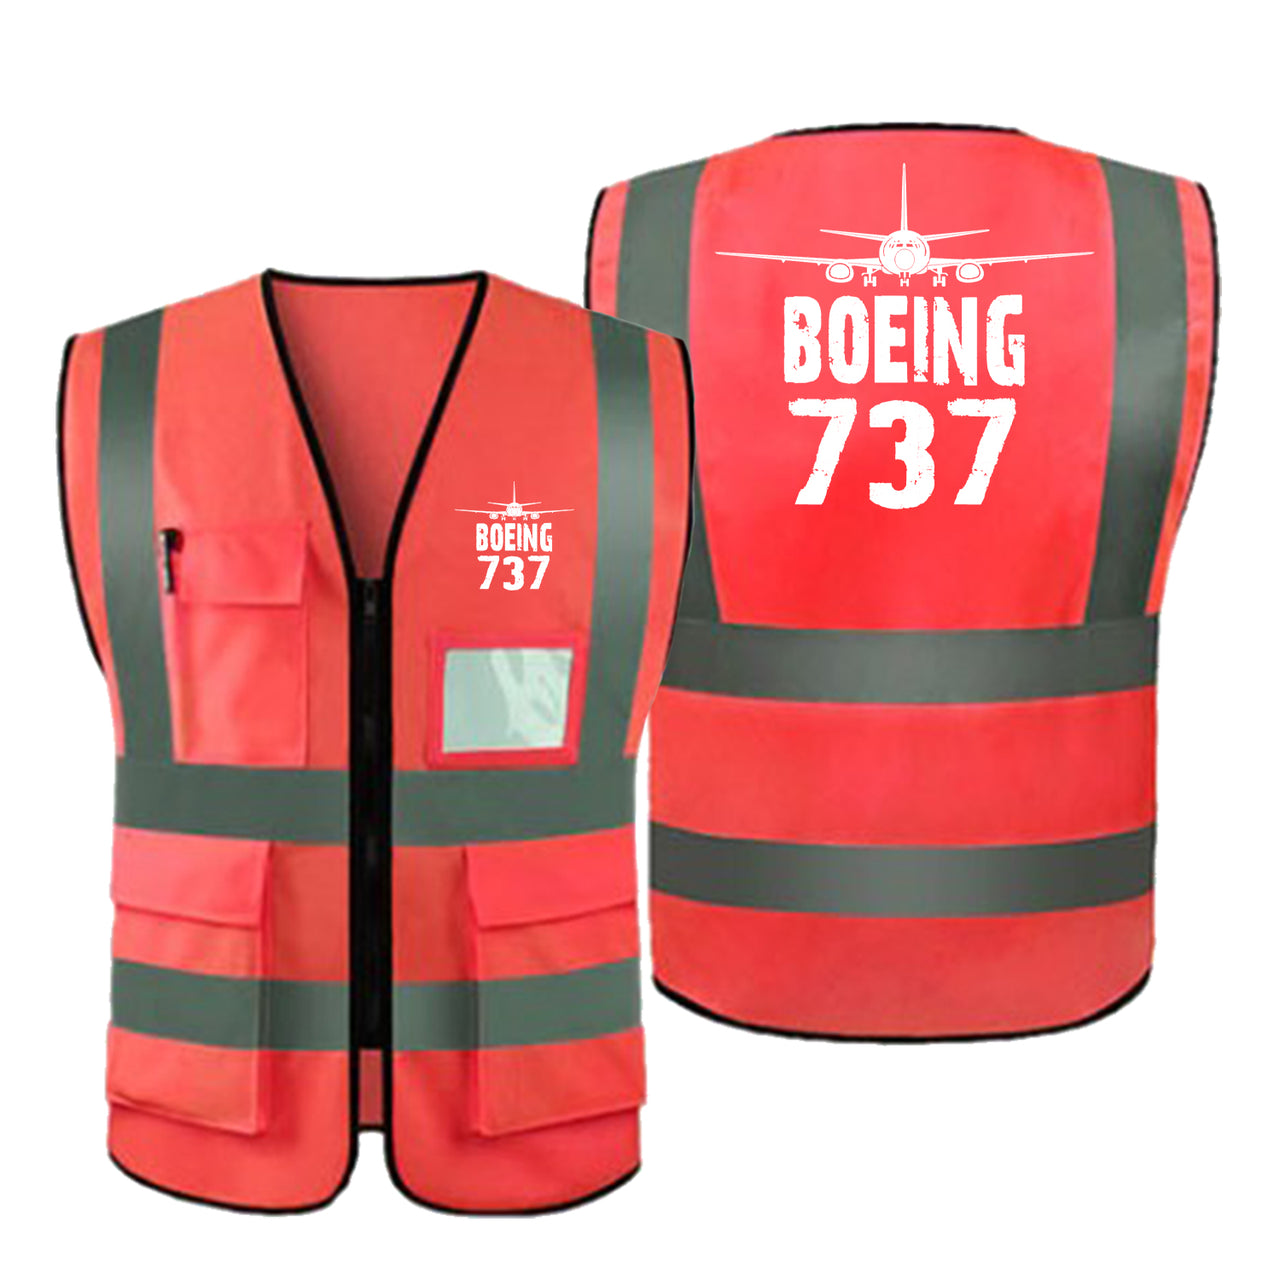 Boeing 737 & Plane Designed Reflective Vests